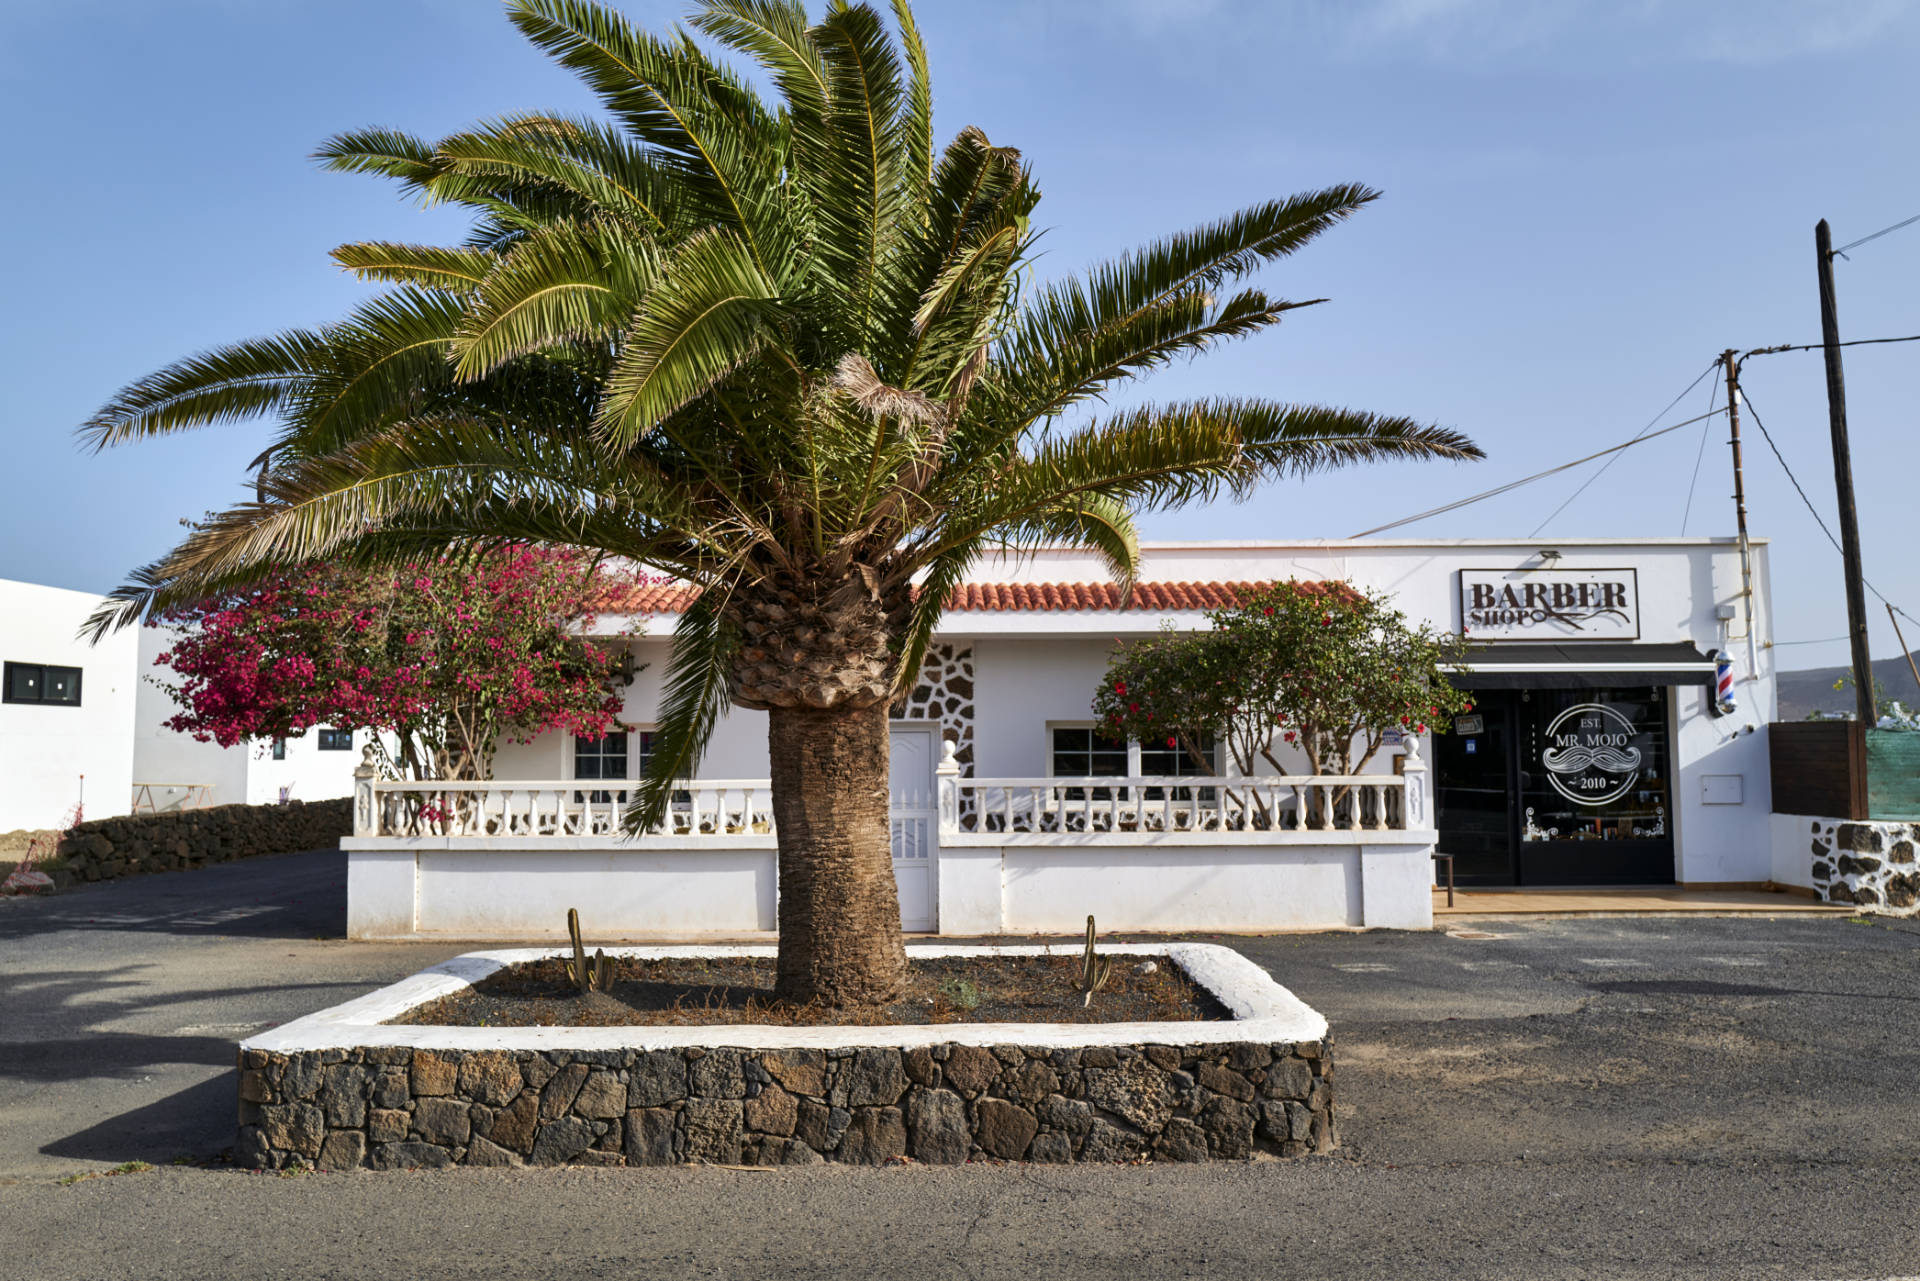 Der Ort Lajares im Norden von Fuerteventura.